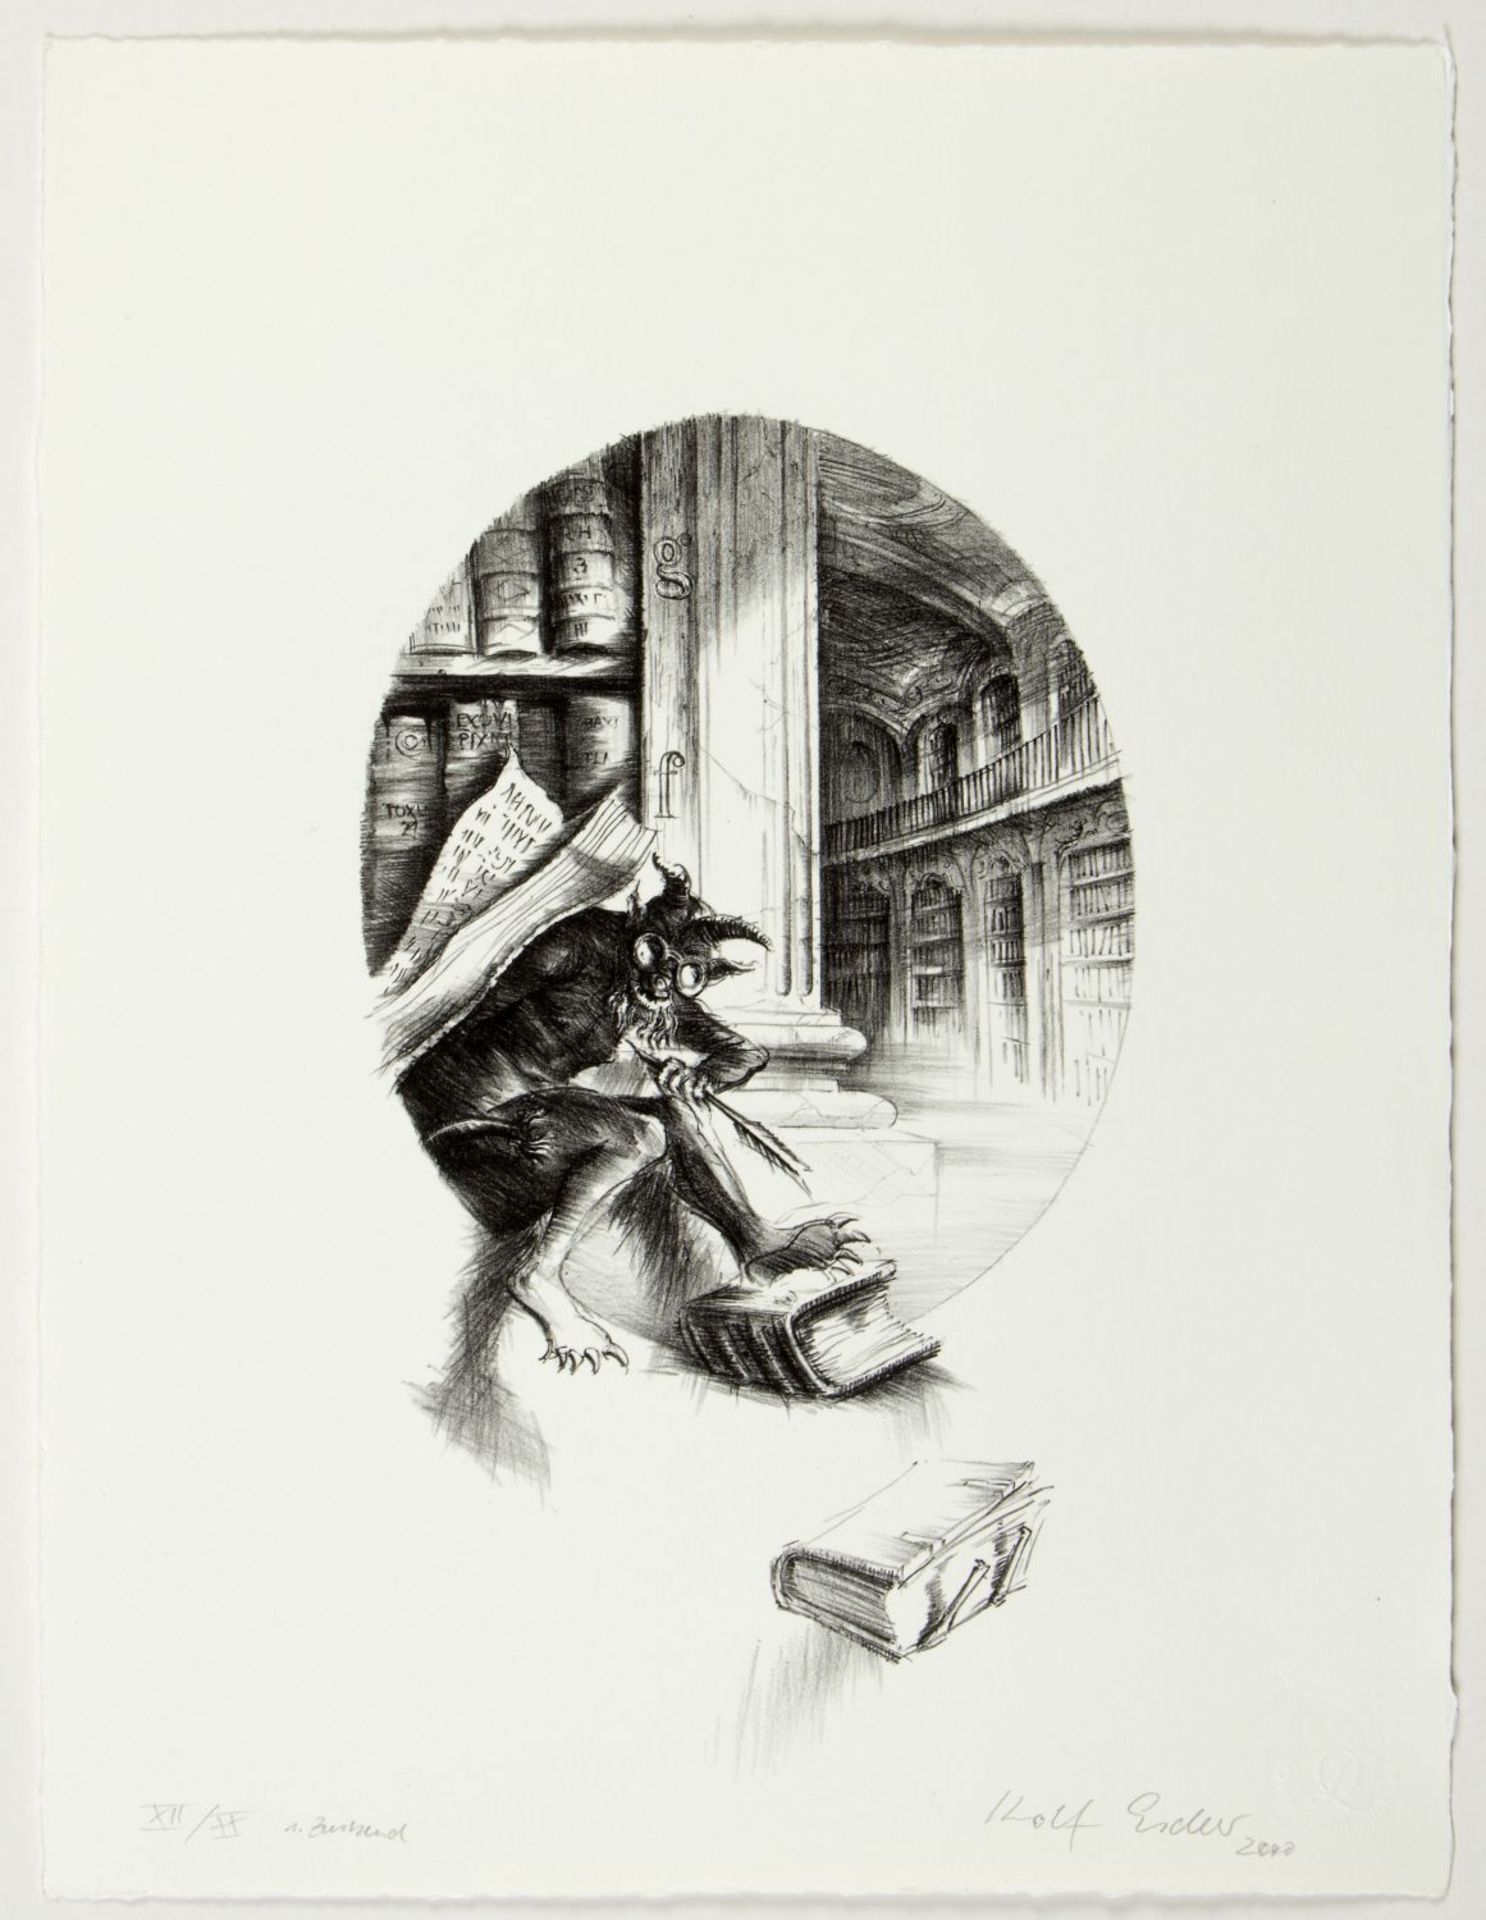 Escher, Rolf. 1936 HagenSchuh. Marmeladenglas mit Fliege. Hirschkäfer und alte Bücher. Teufel in der - Image 5 of 5